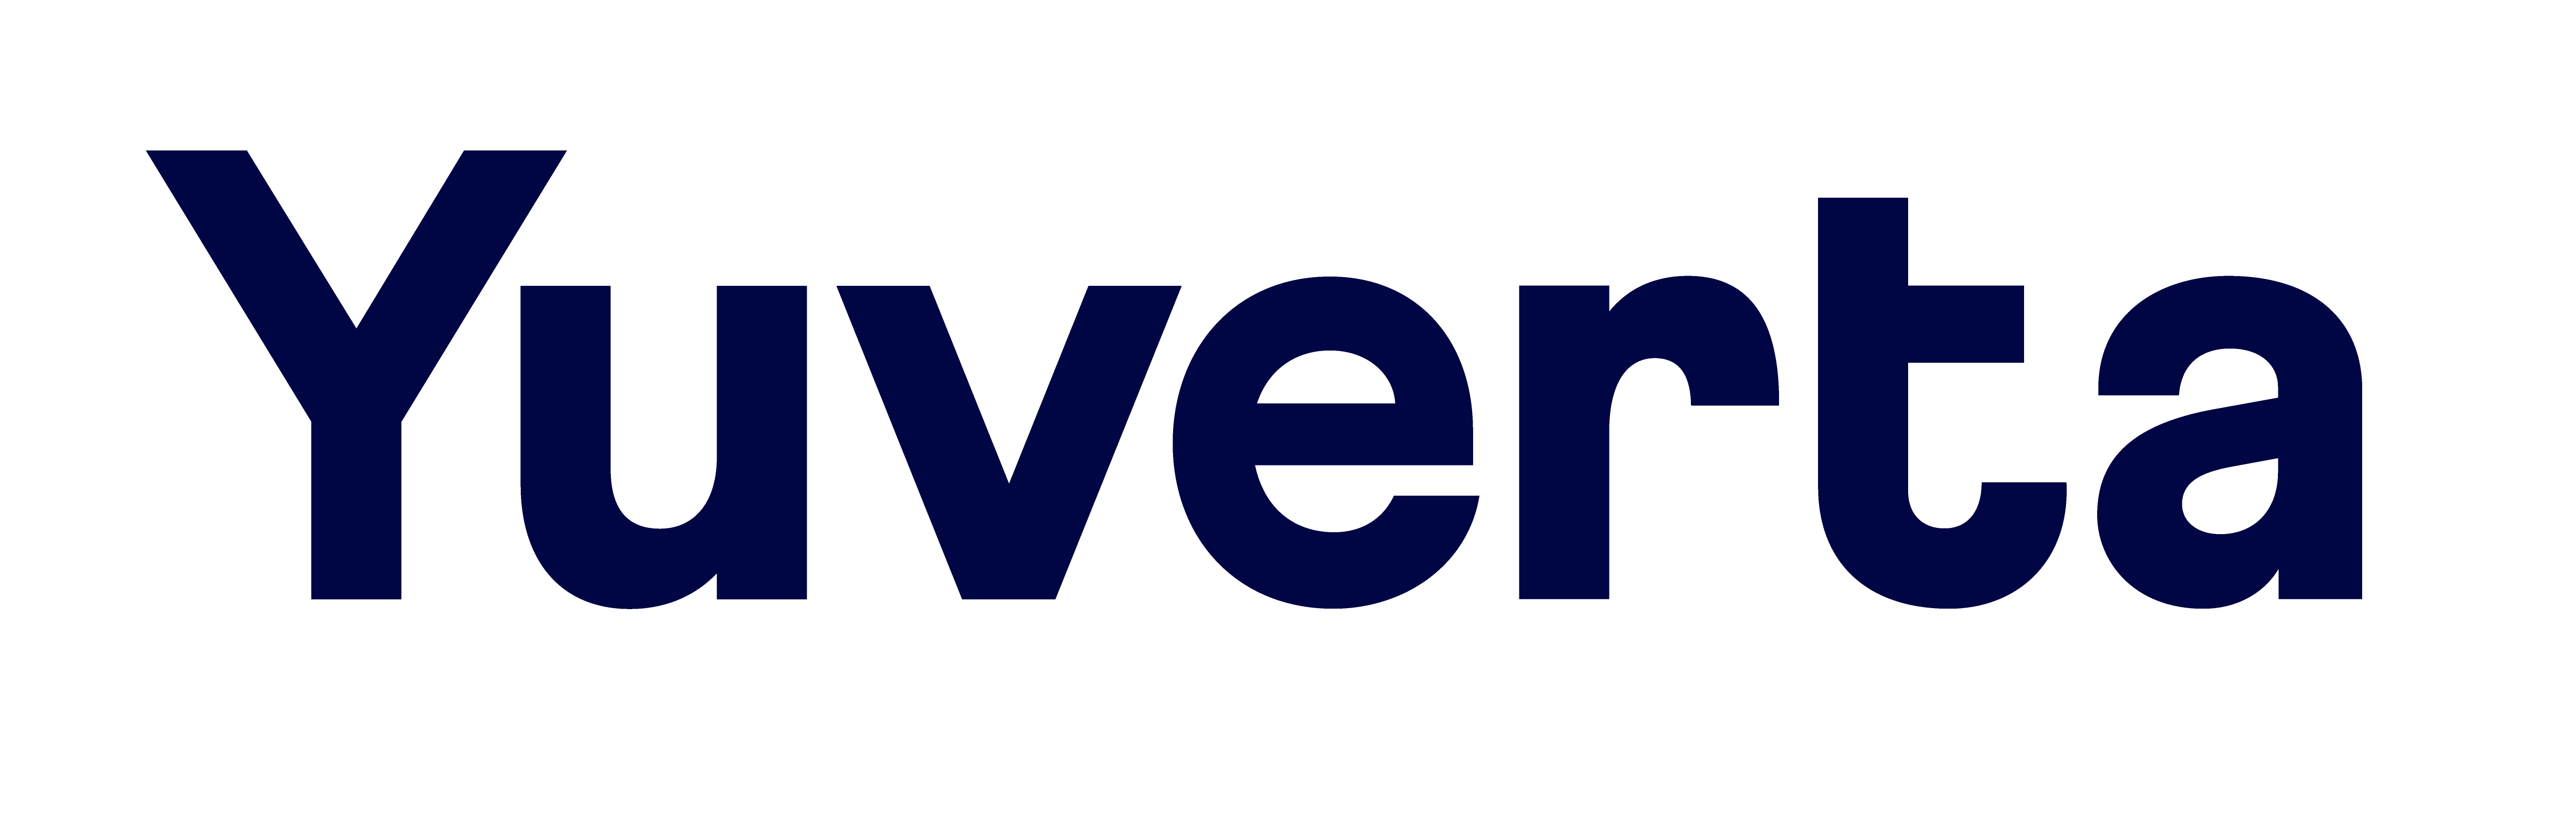 Logo Logo Yuverta